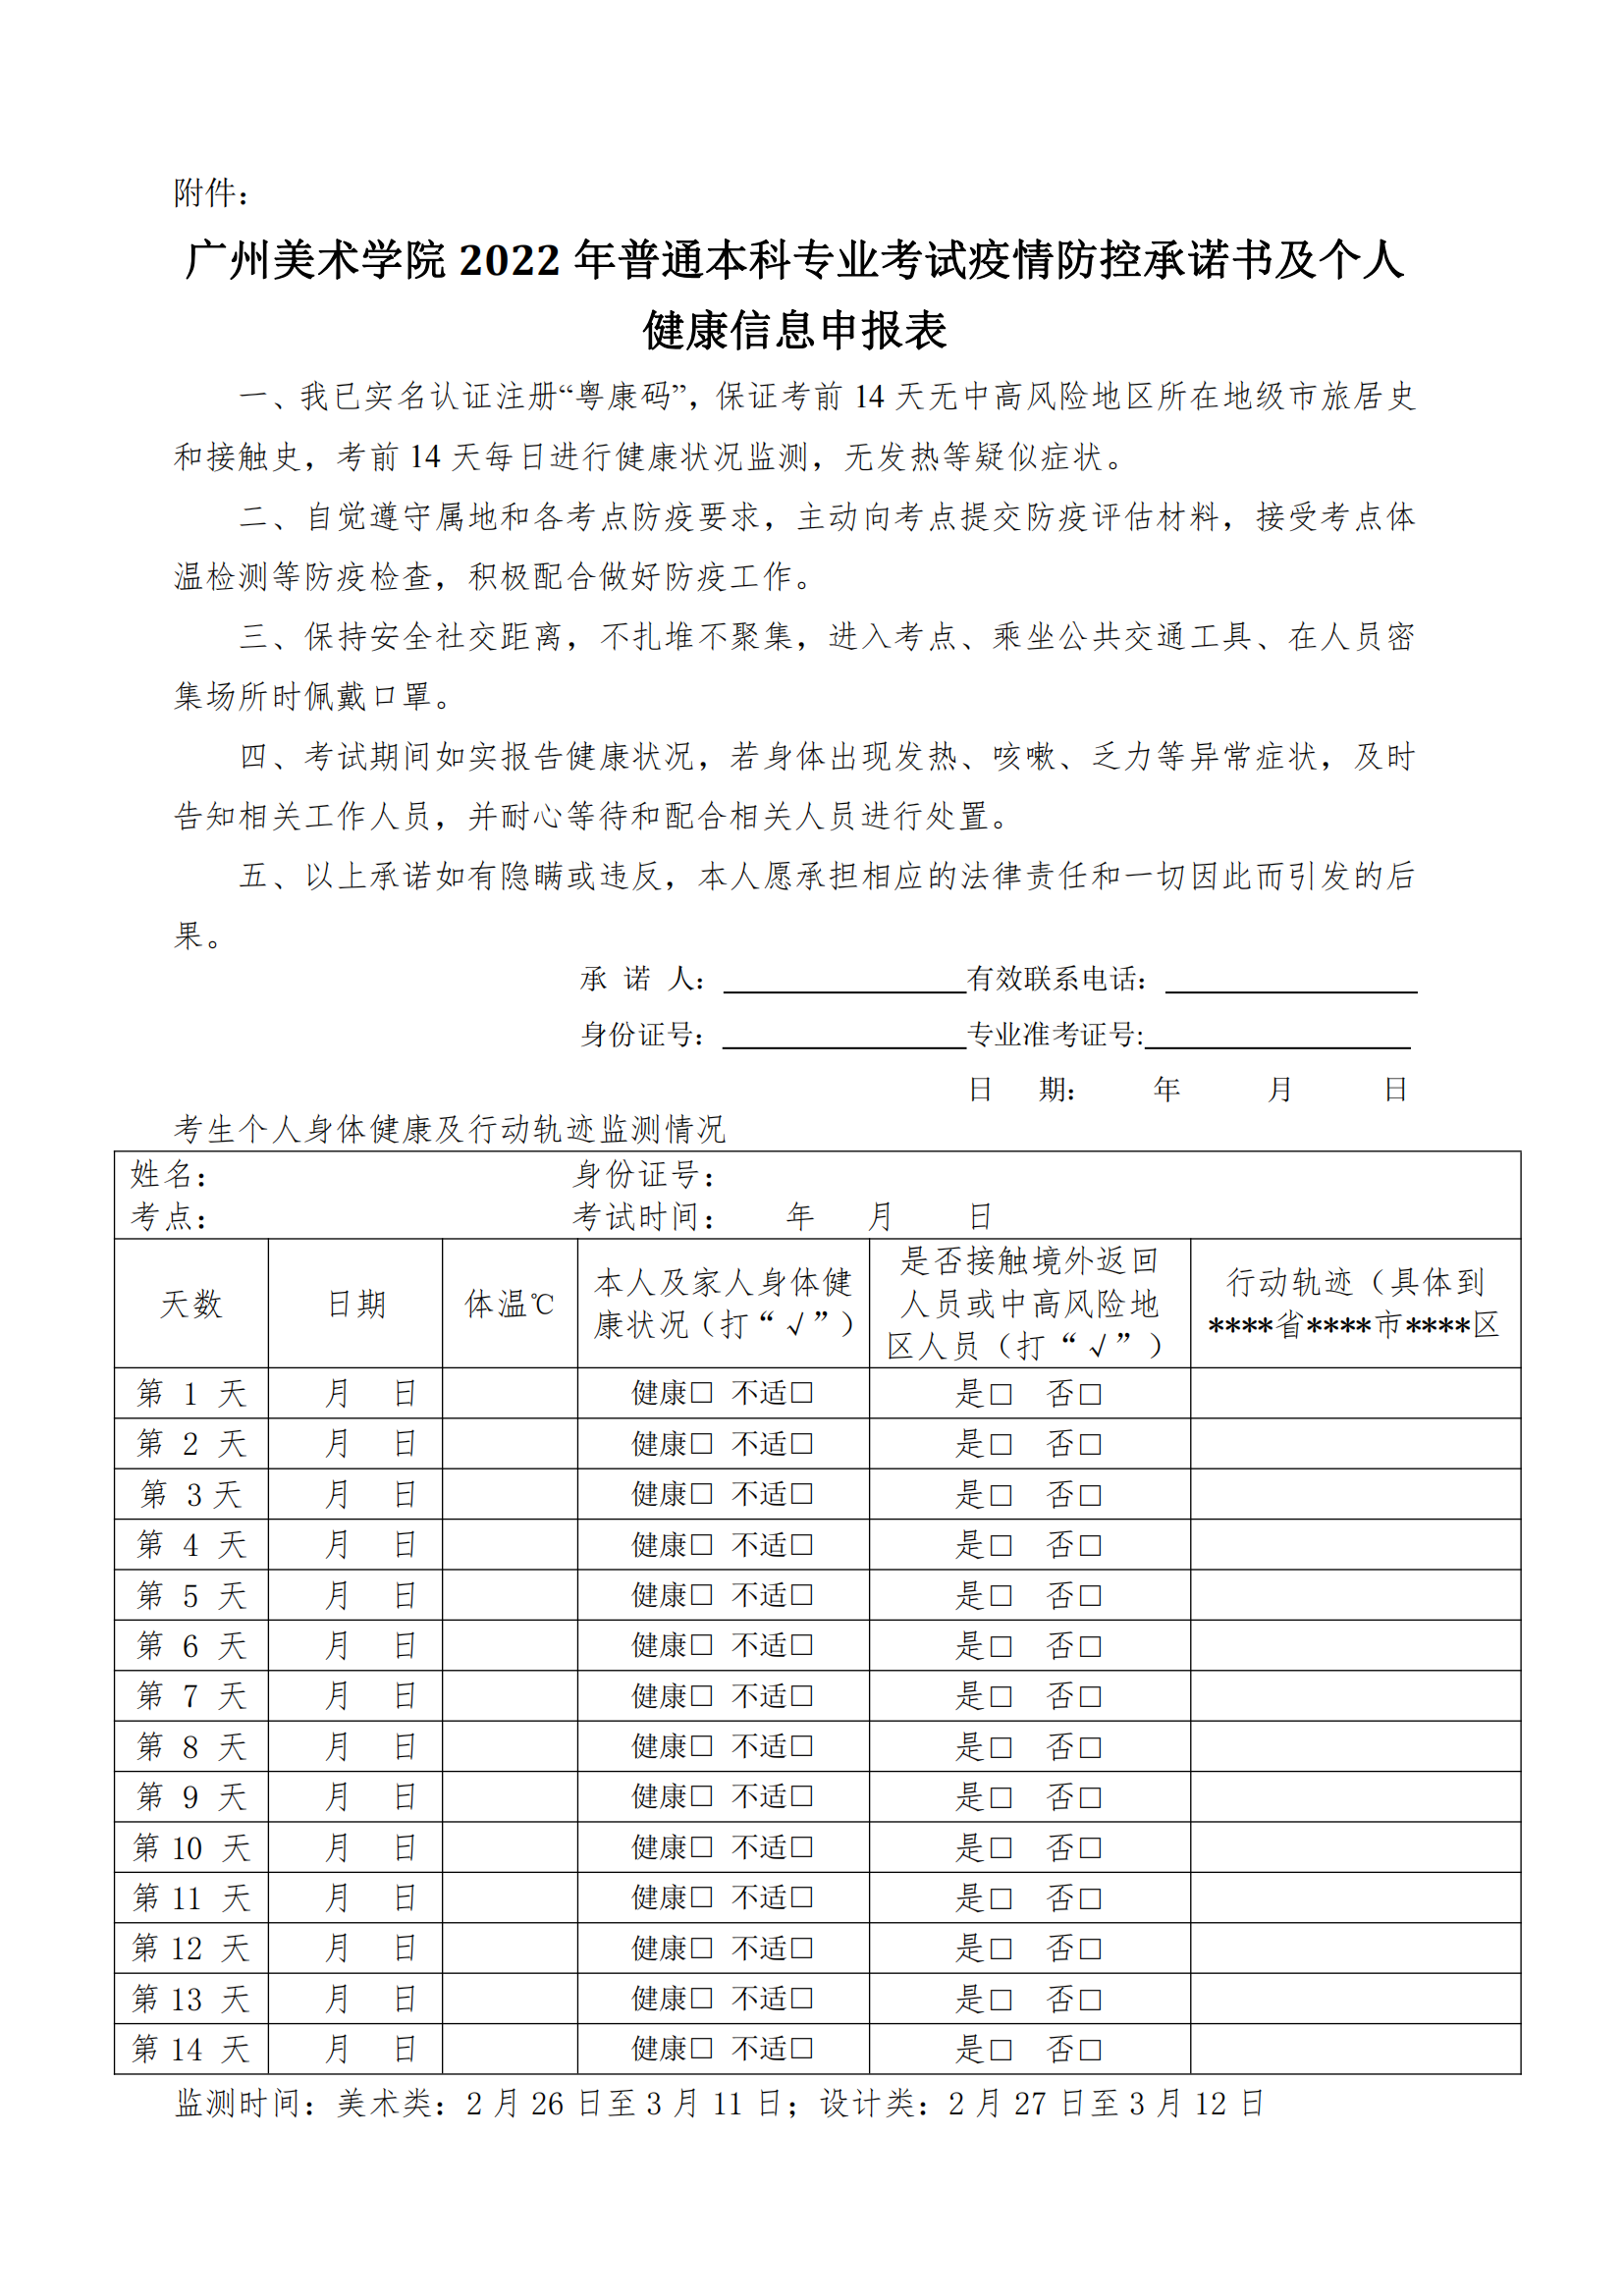 附件：广州美术学院2022年普通本科专业考试疫情防控承诺书及个人健康信息申报表_00.png